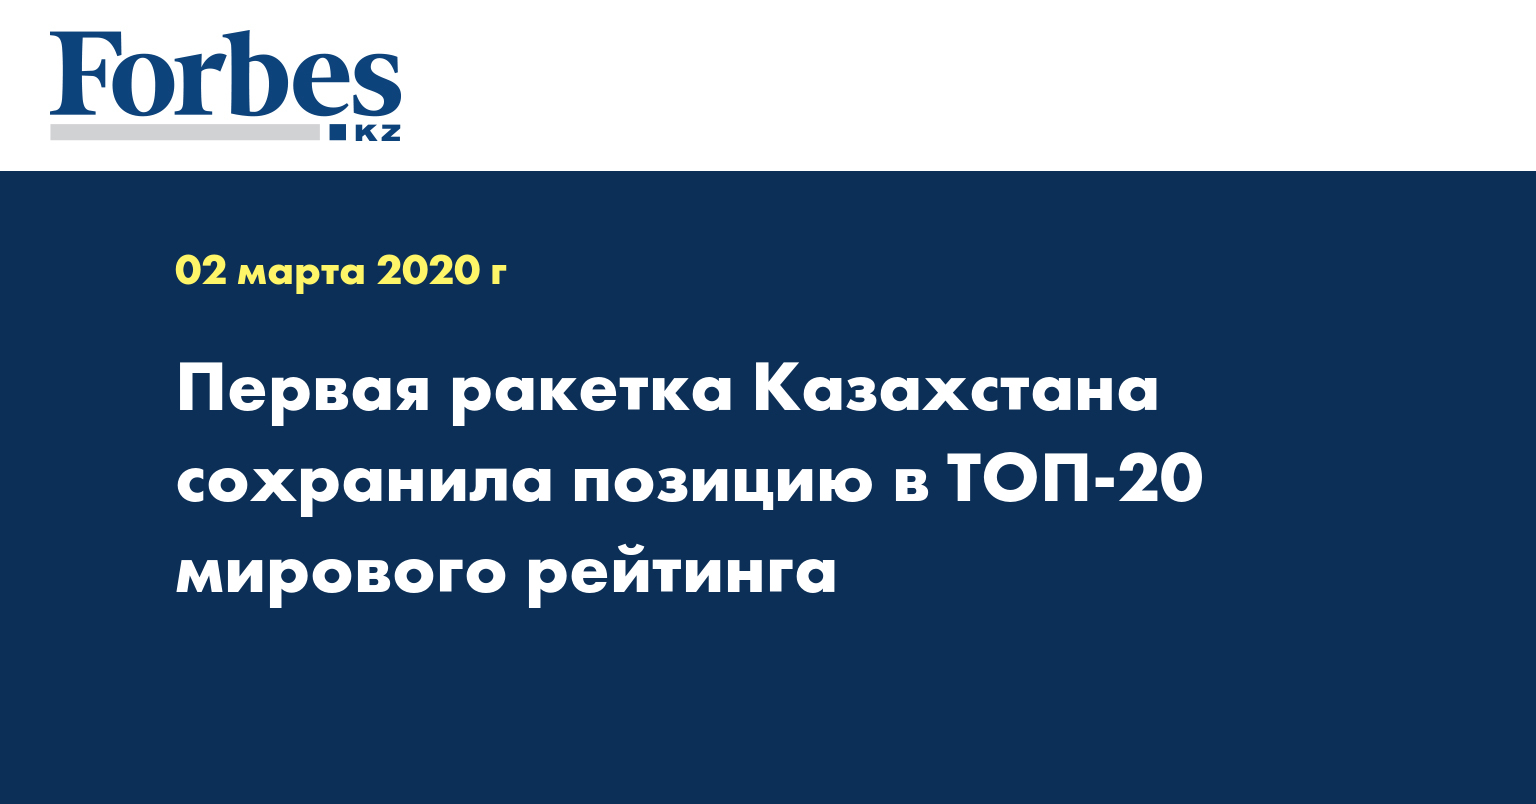 Первая ракетка Казахстана сохранила позицию в ТОП-20 мирового рейтинга